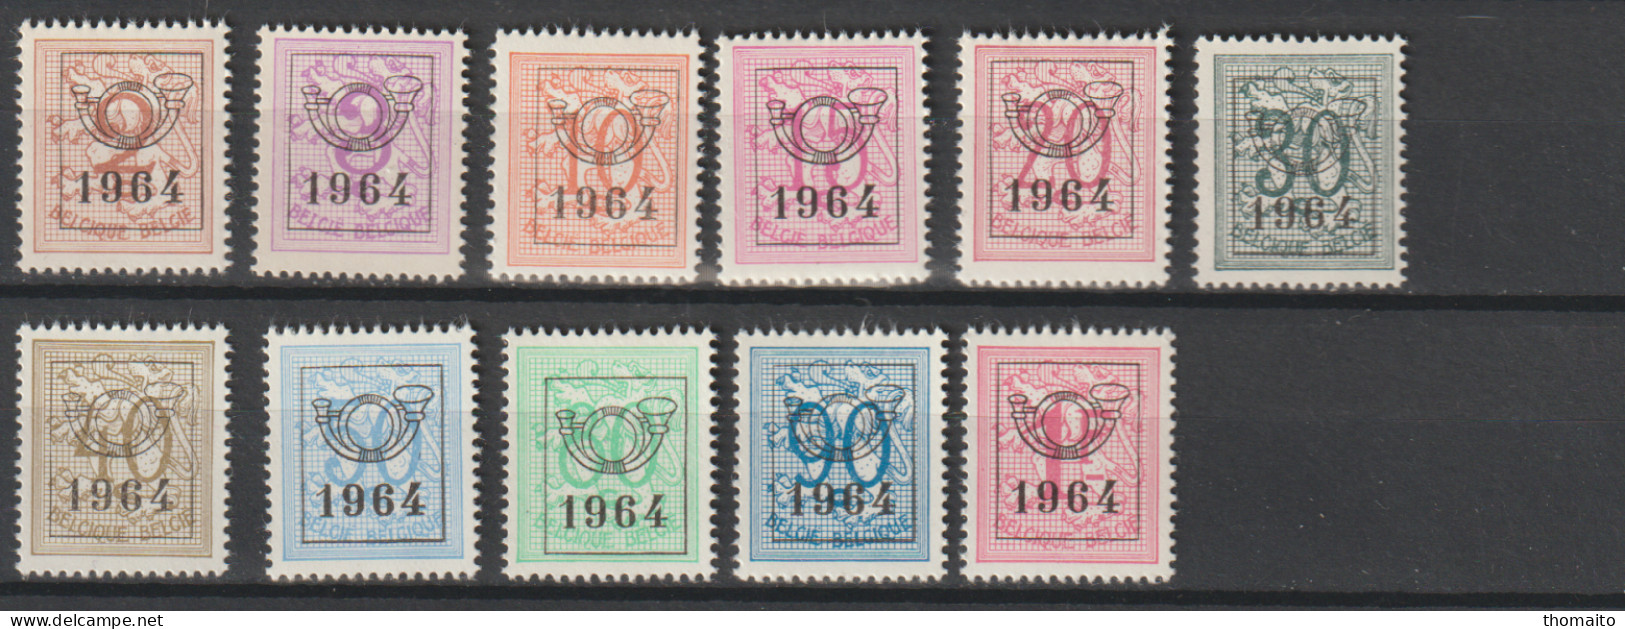 België/Belgique - OBP/COB PRE747-757 - 1964 - Cijfer Op Heraldieke Leeuw - MNH/NSC/** - Typo Precancels 1951-80 (Figure On Lion)